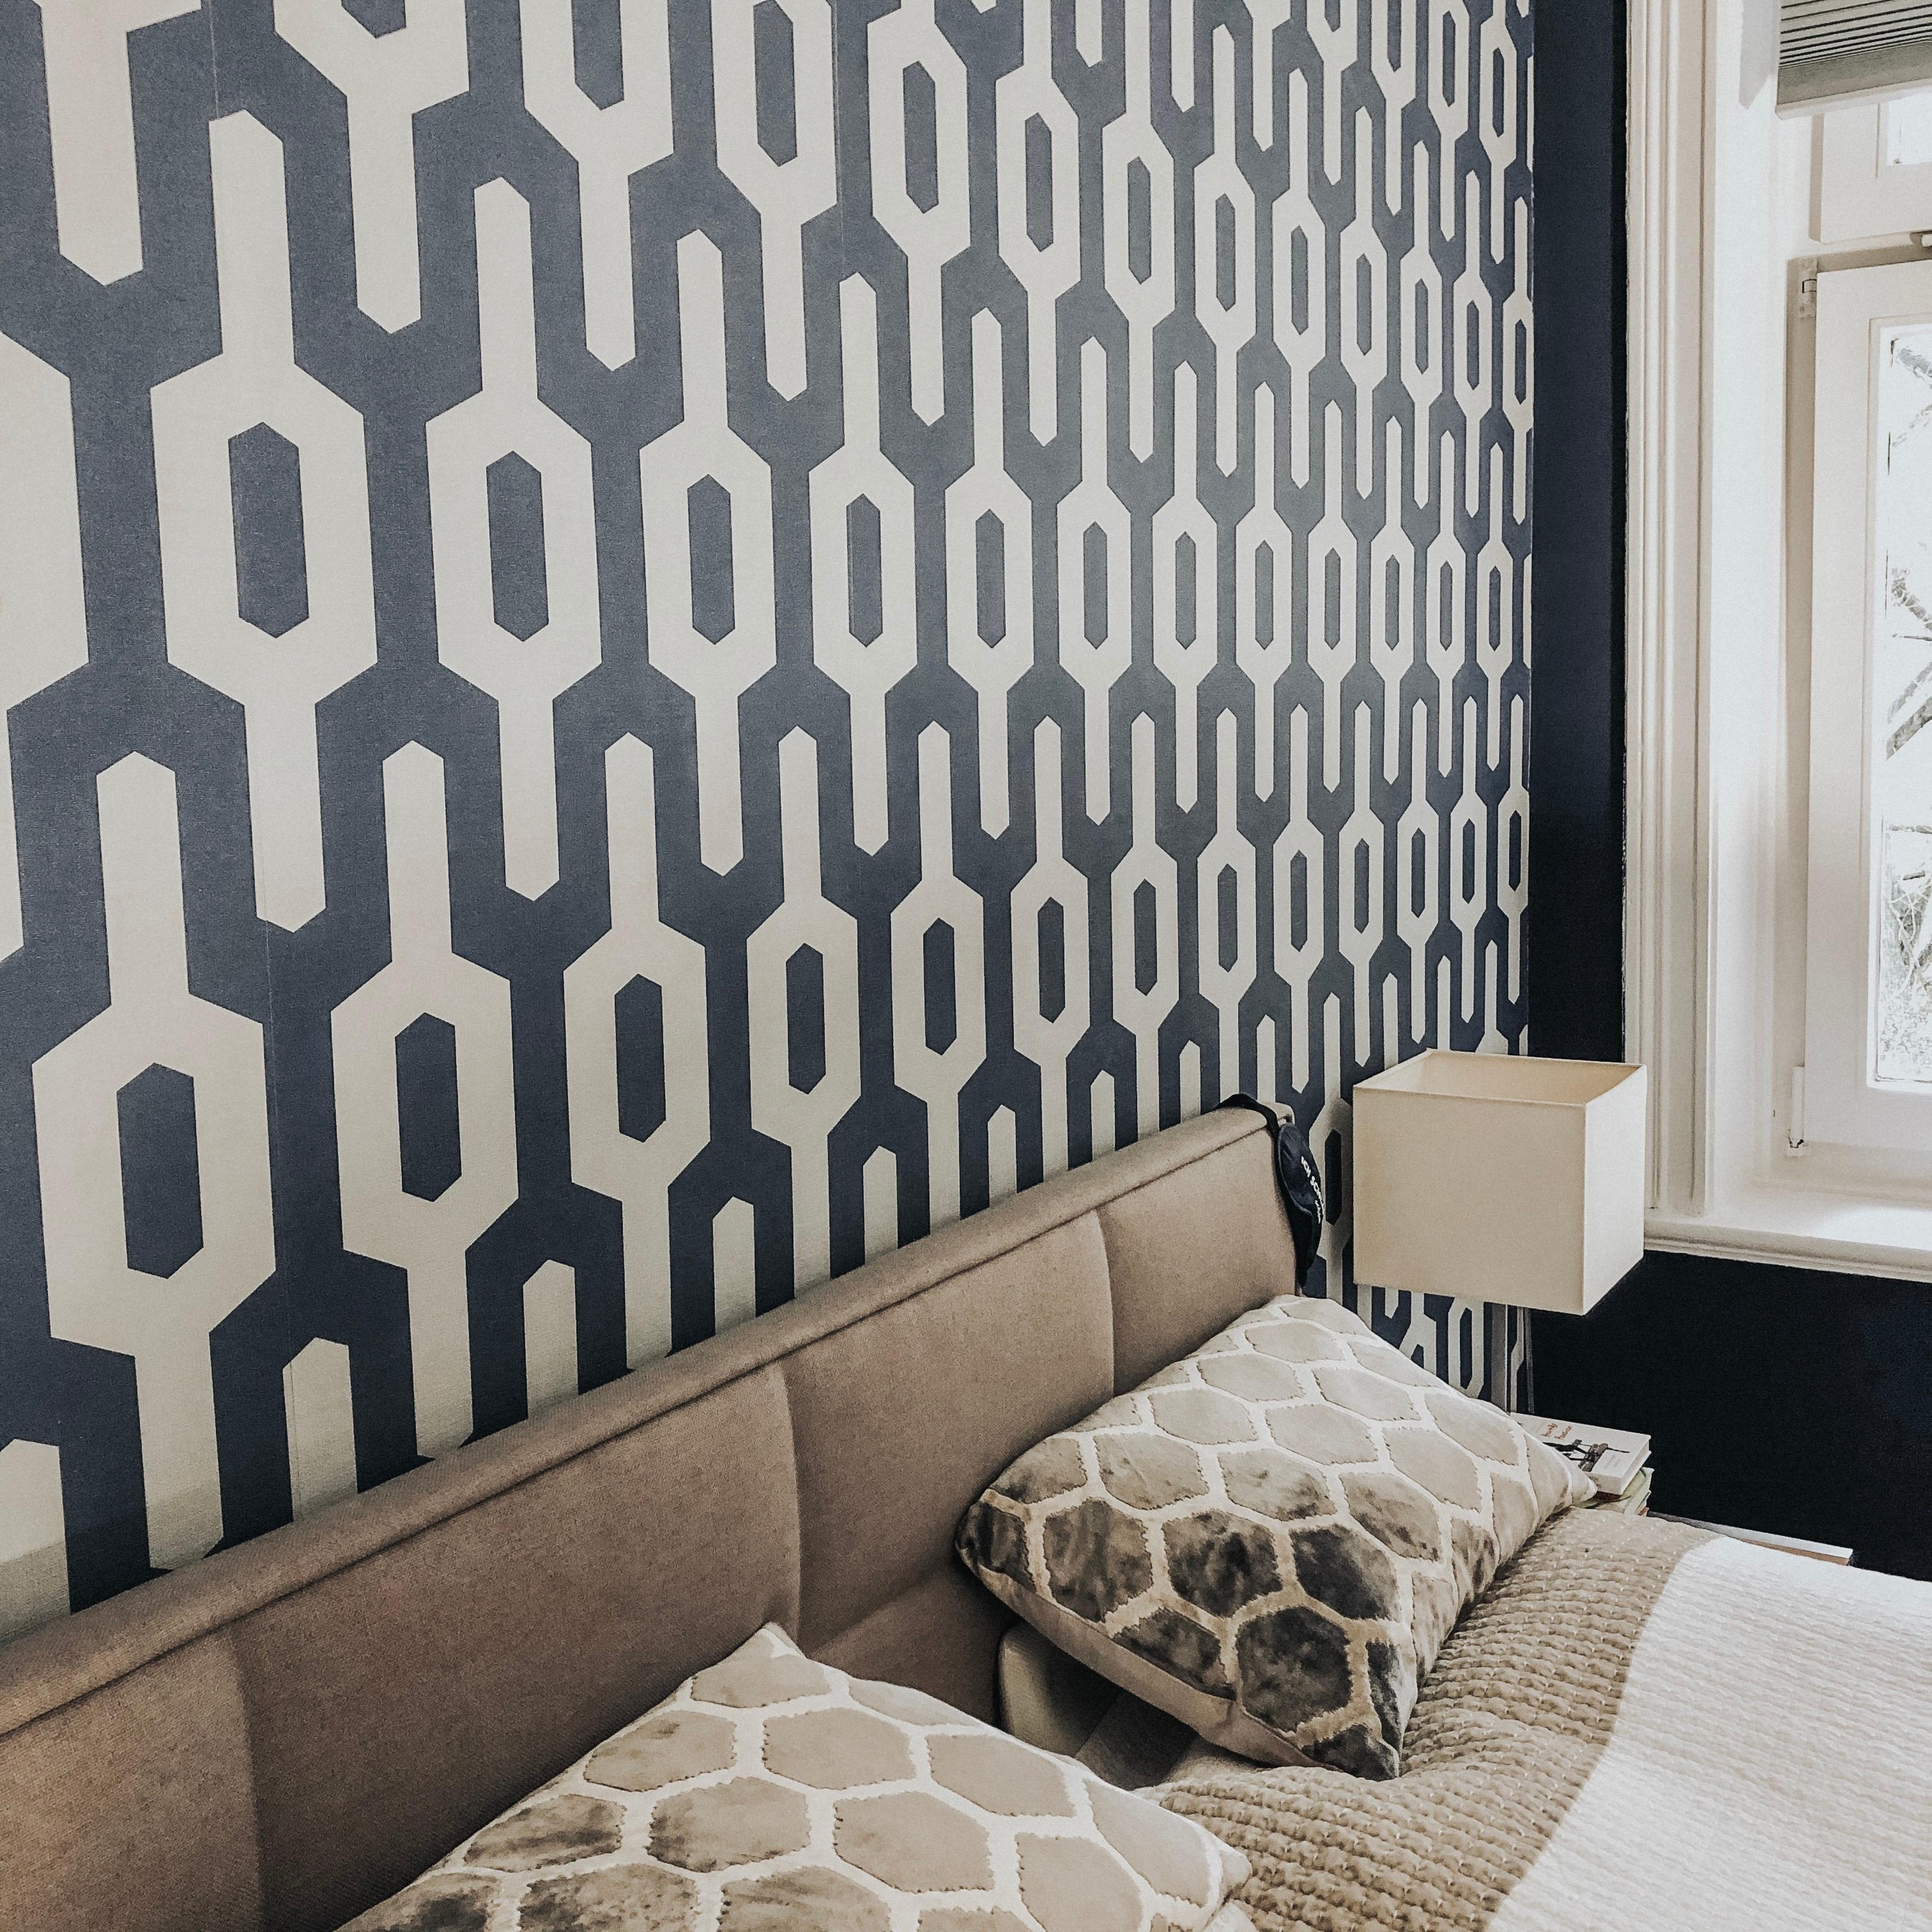 'Ich dreh mich nochmal um.' #bedroom #newstyle #interiors #interieur #interiordesign #schlafzimmer #tapete #blauefarbe